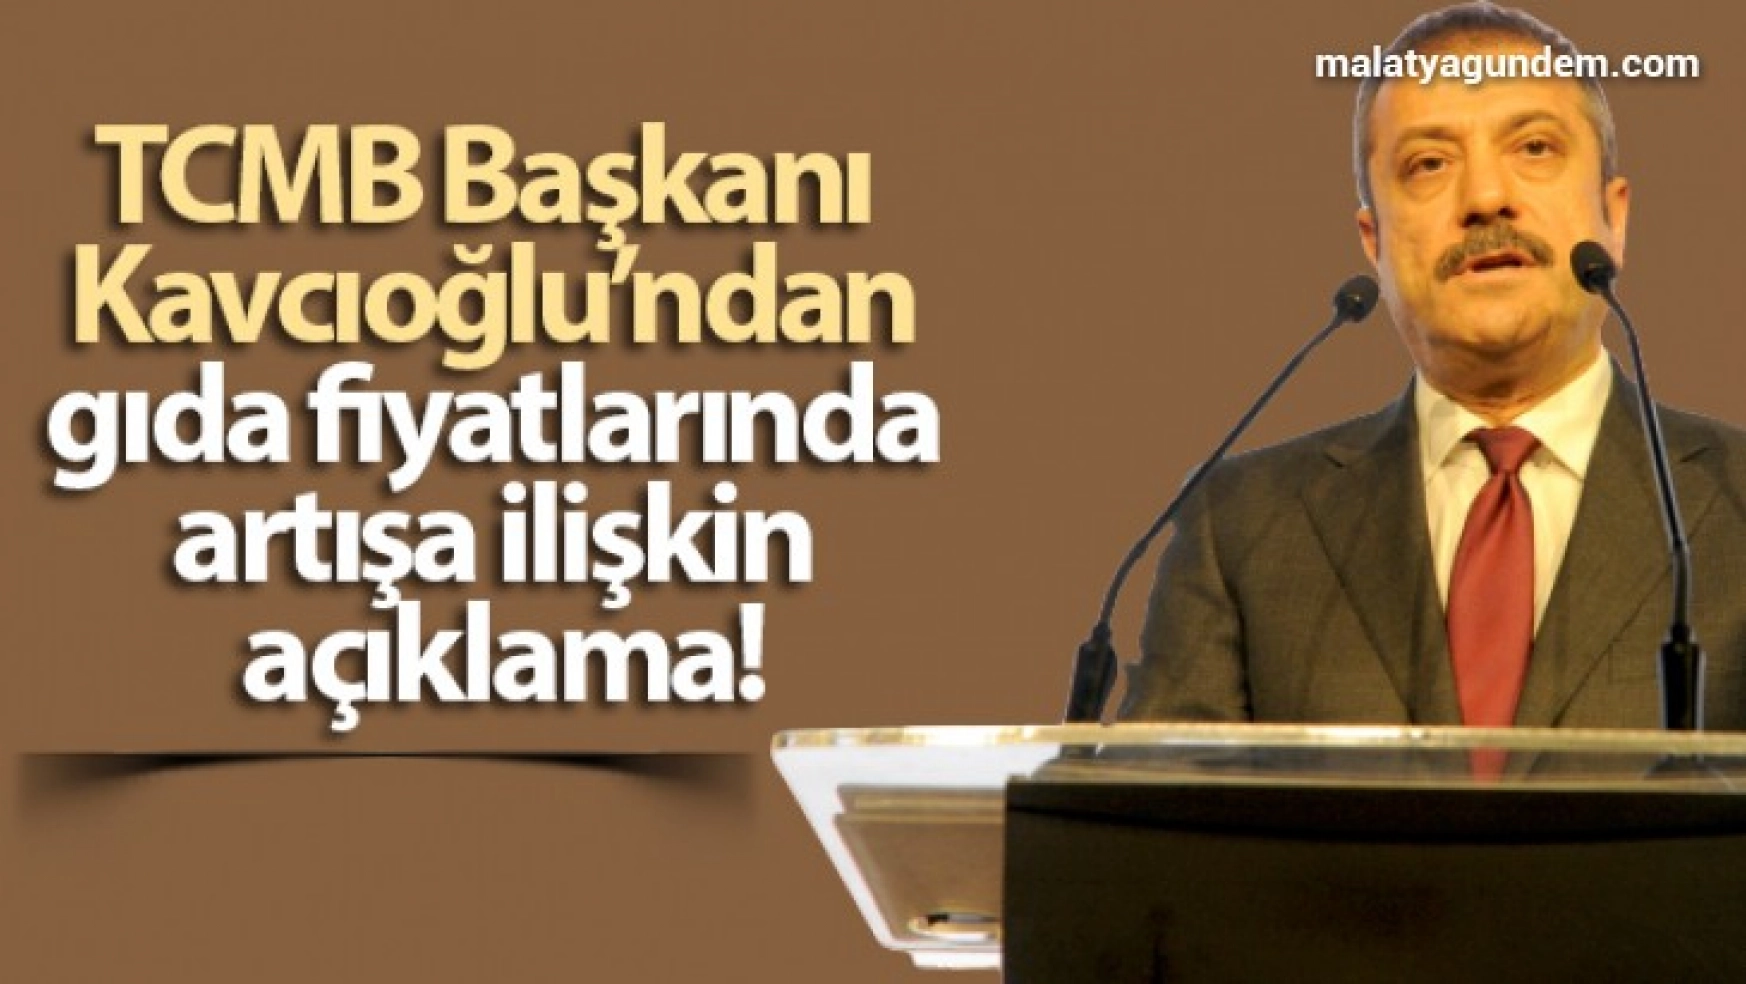 TCMB Başkanı Kavcıoğlu'ndan gıda fiyatlarında artışa ilişkin açıklama